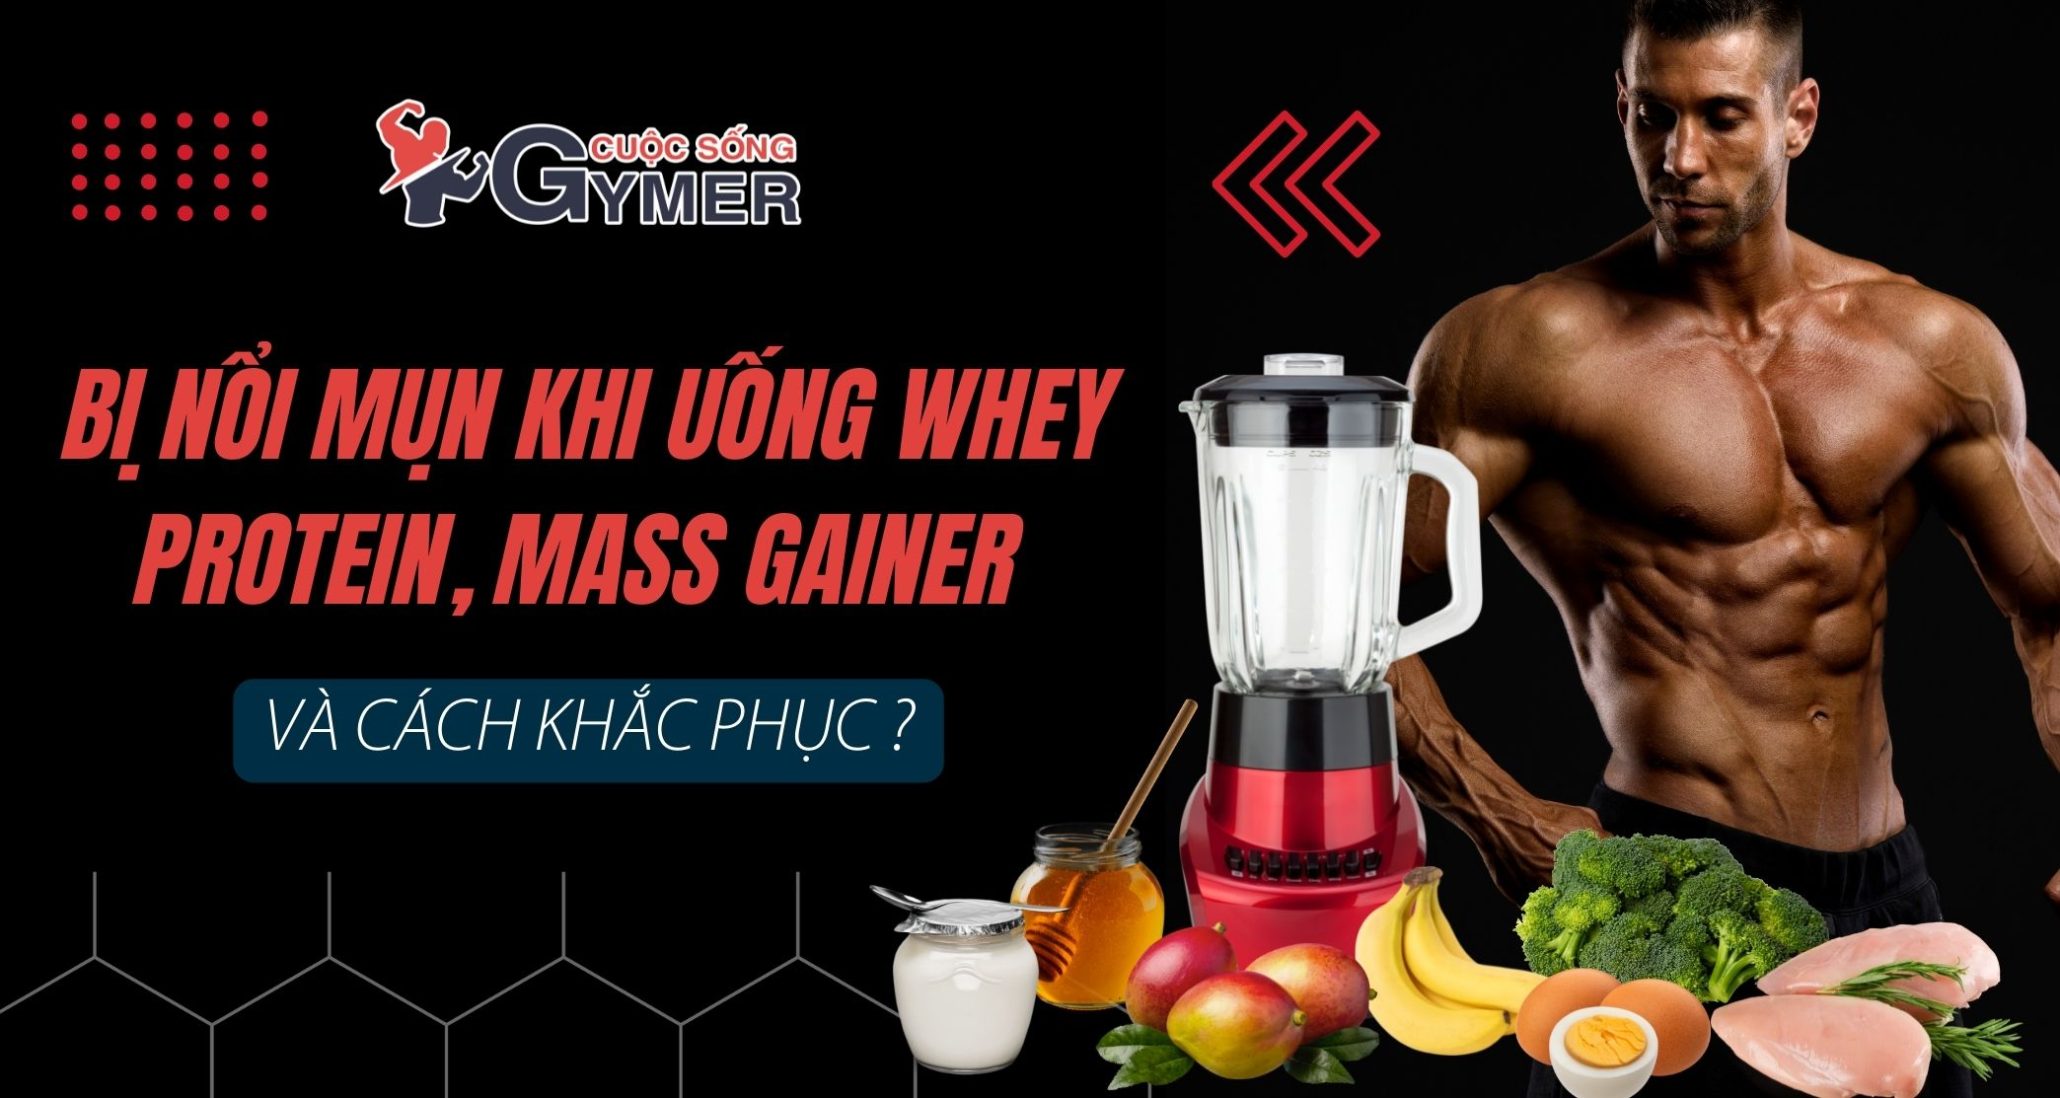 Bị nổi mụn khi uống Whey Protein, Mass Gainer và cách khắc phục?